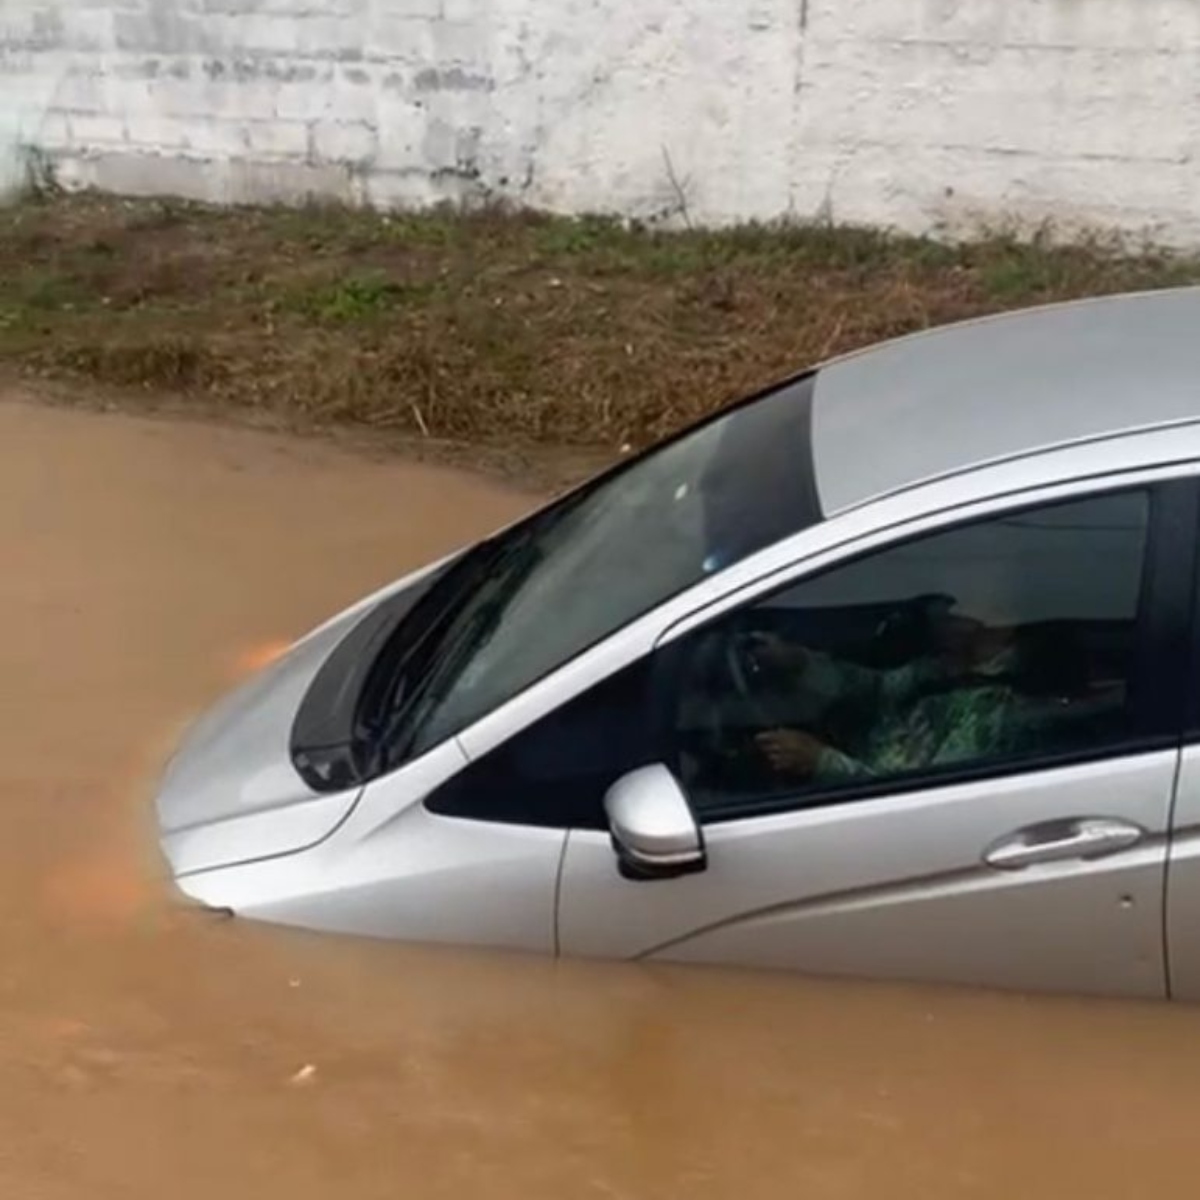  Carro com idosa dentro é arrastado pela água ao cair em rio durante temporal 